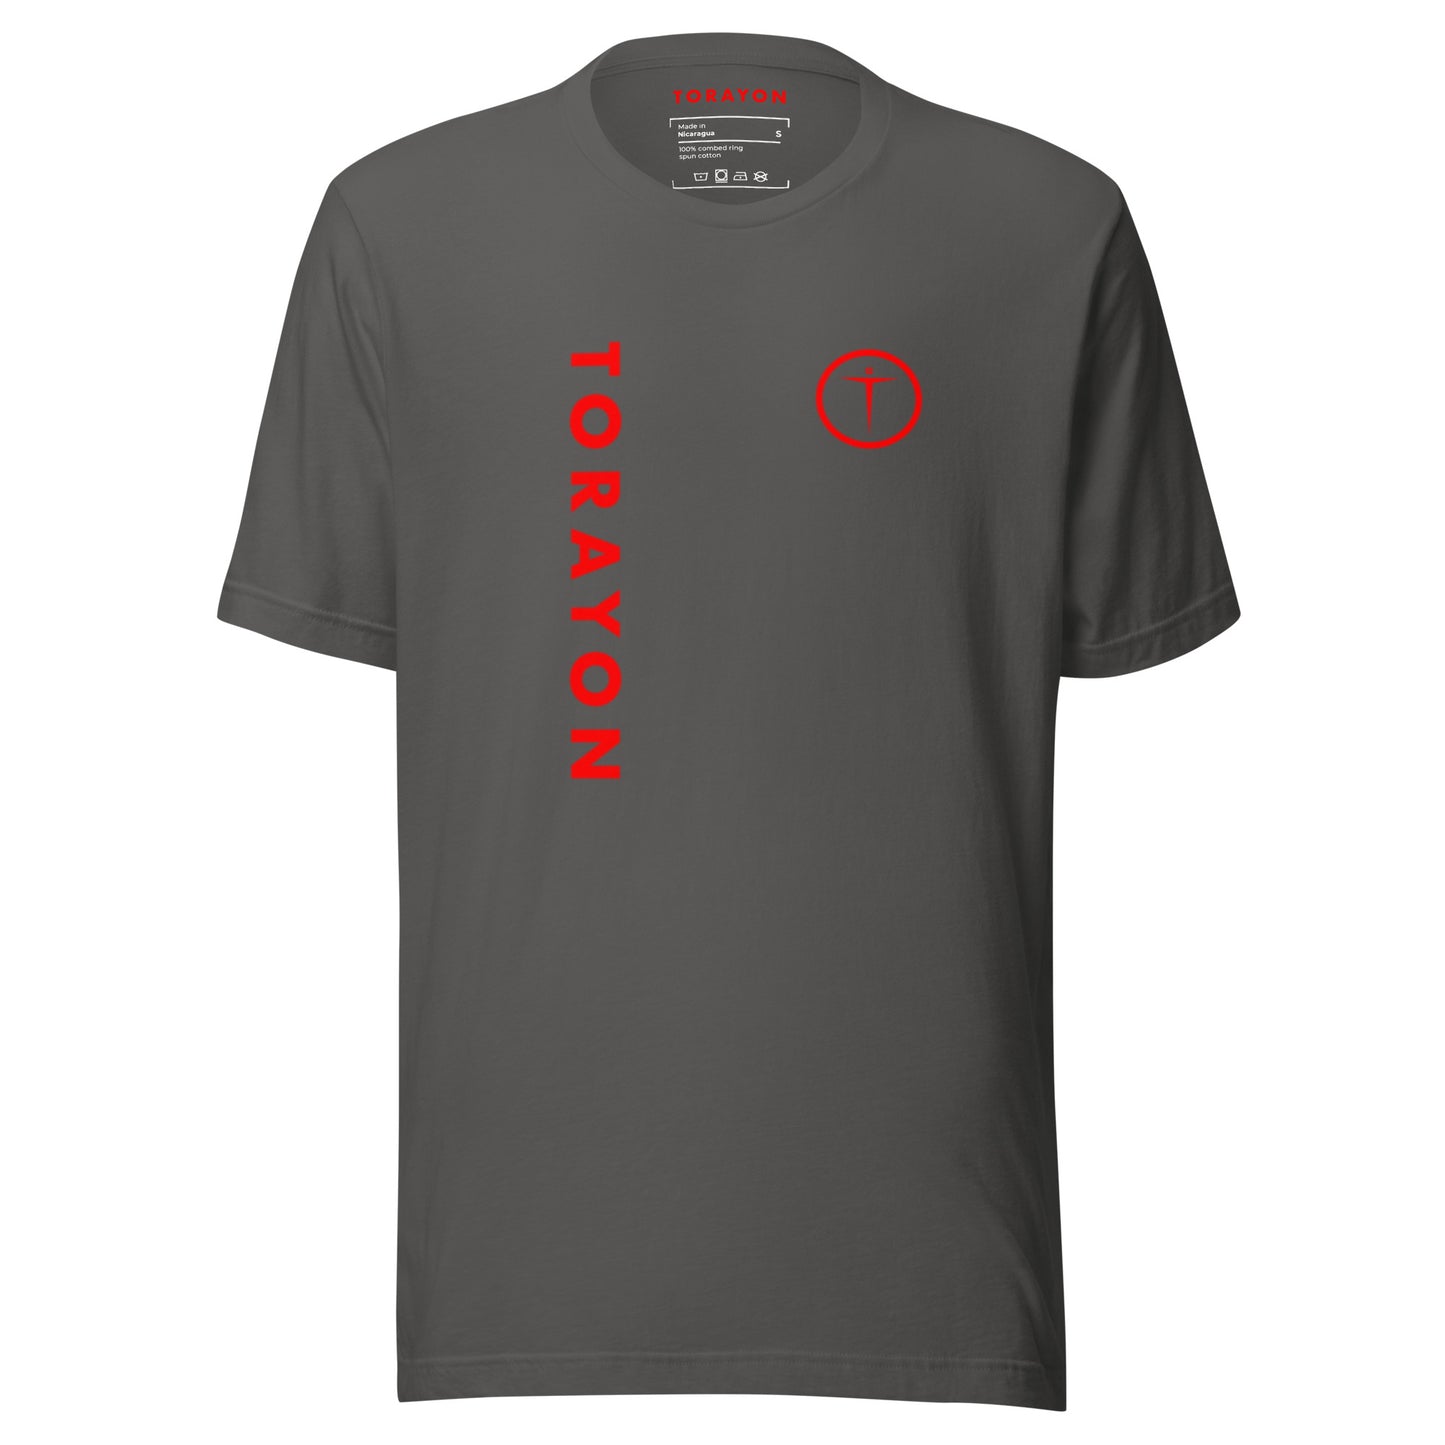 TORAYON [TORCHLIBERTY] Unisex t-shirt